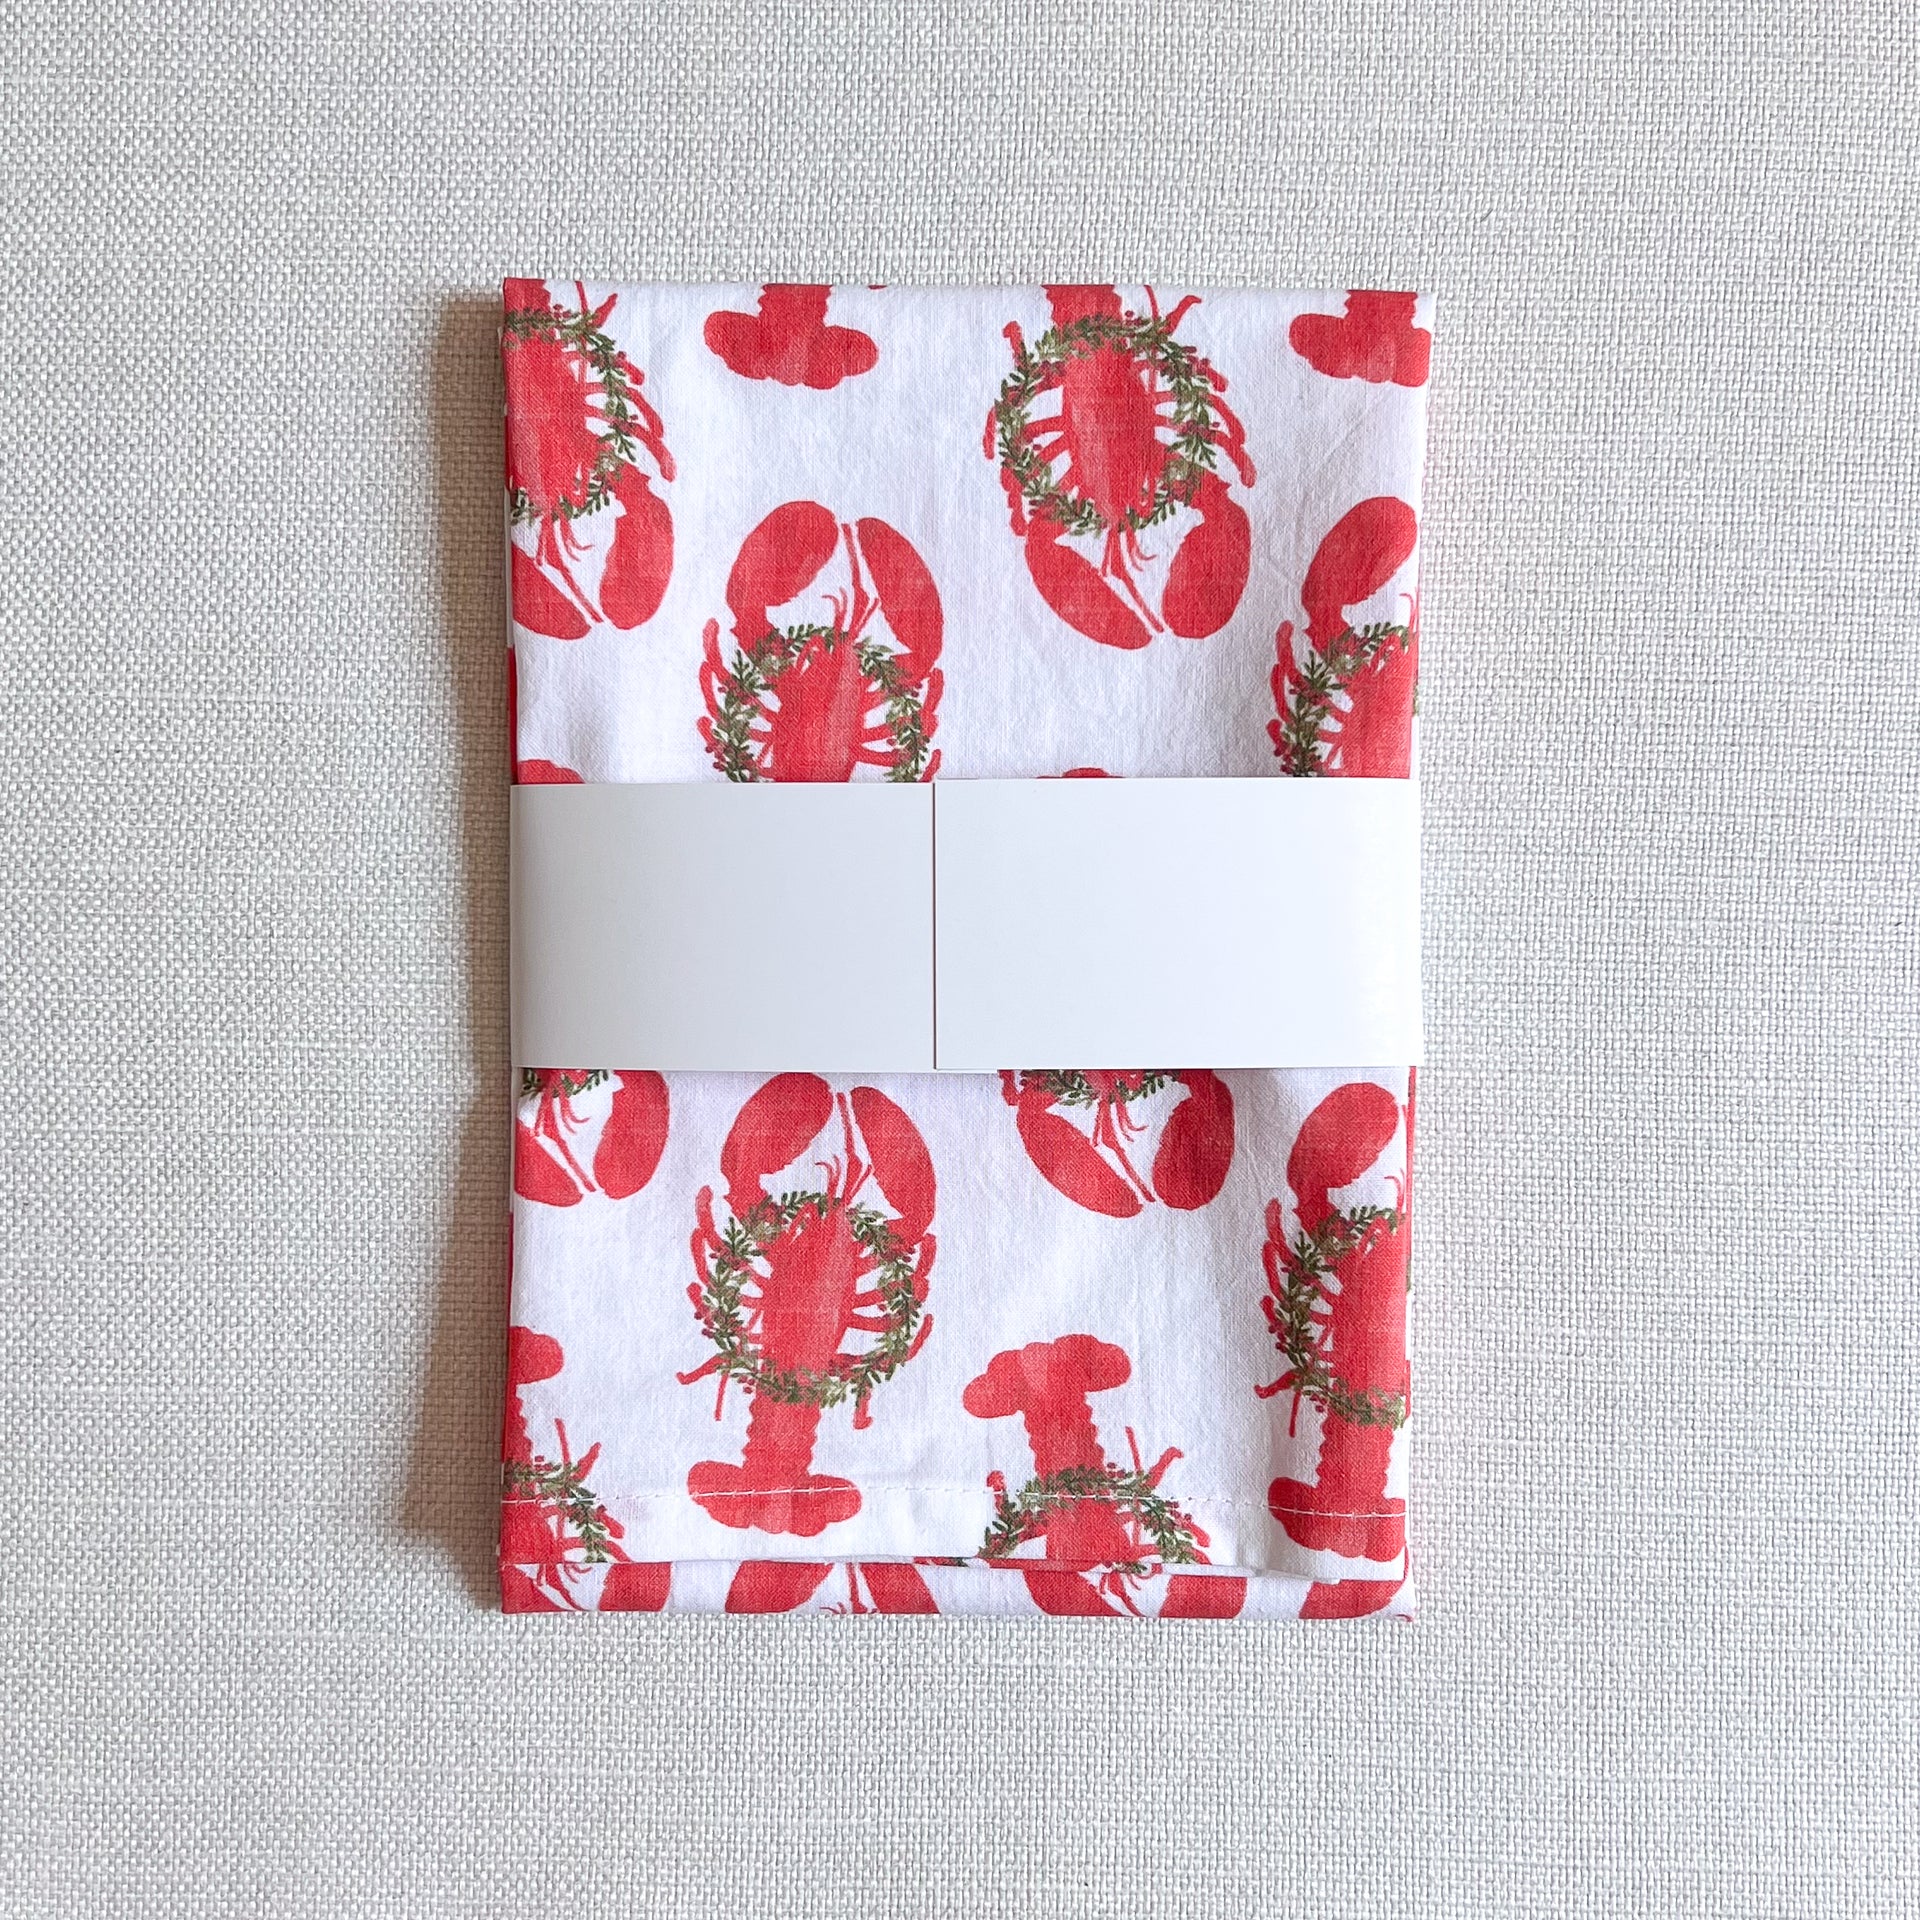 Holiday Lobsters Tea Towel Tea Towel by Gert & Co